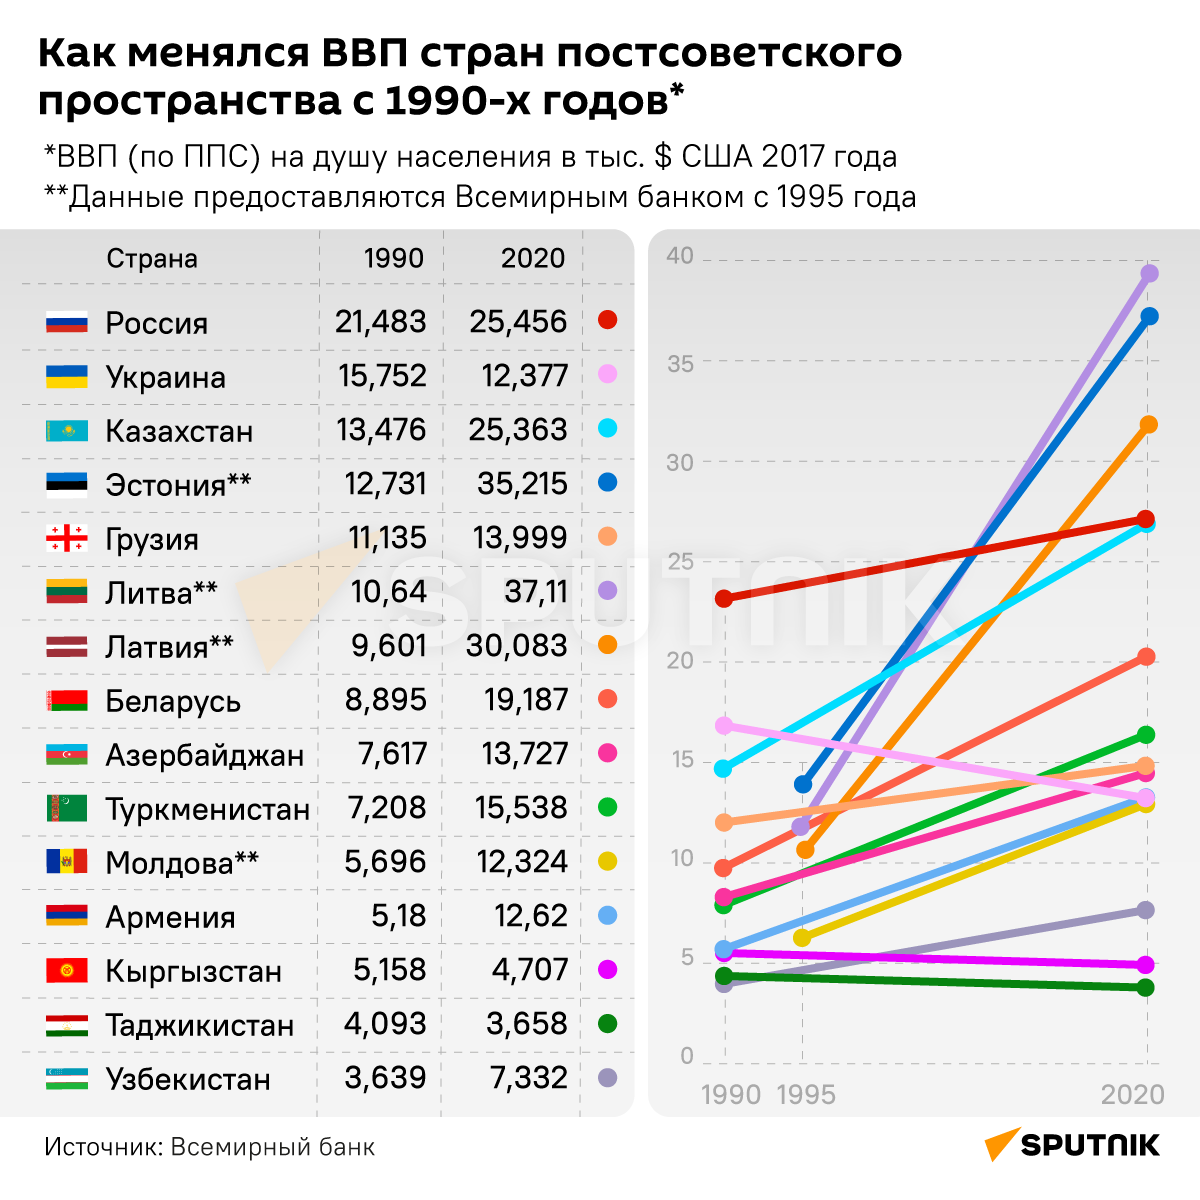 Инфографика: Как менялась ВВП стран постсоветского пространства с 1990-х годов - Sputnik Азербайджан